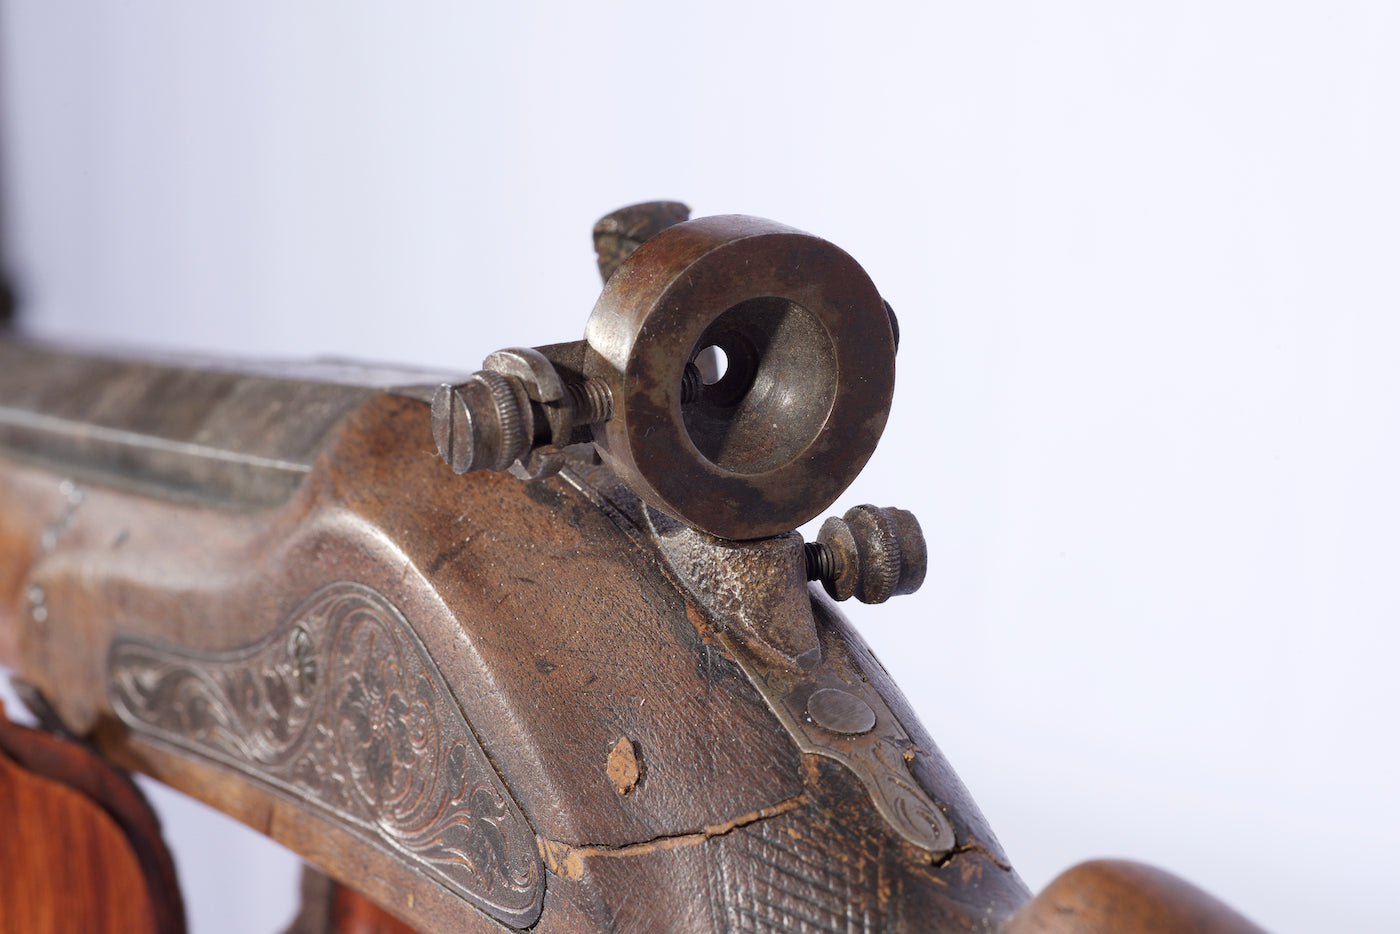 Ornate Schuetzen Rifle - 1870 22 cal (with a full octagan barrel) German "castle" gun